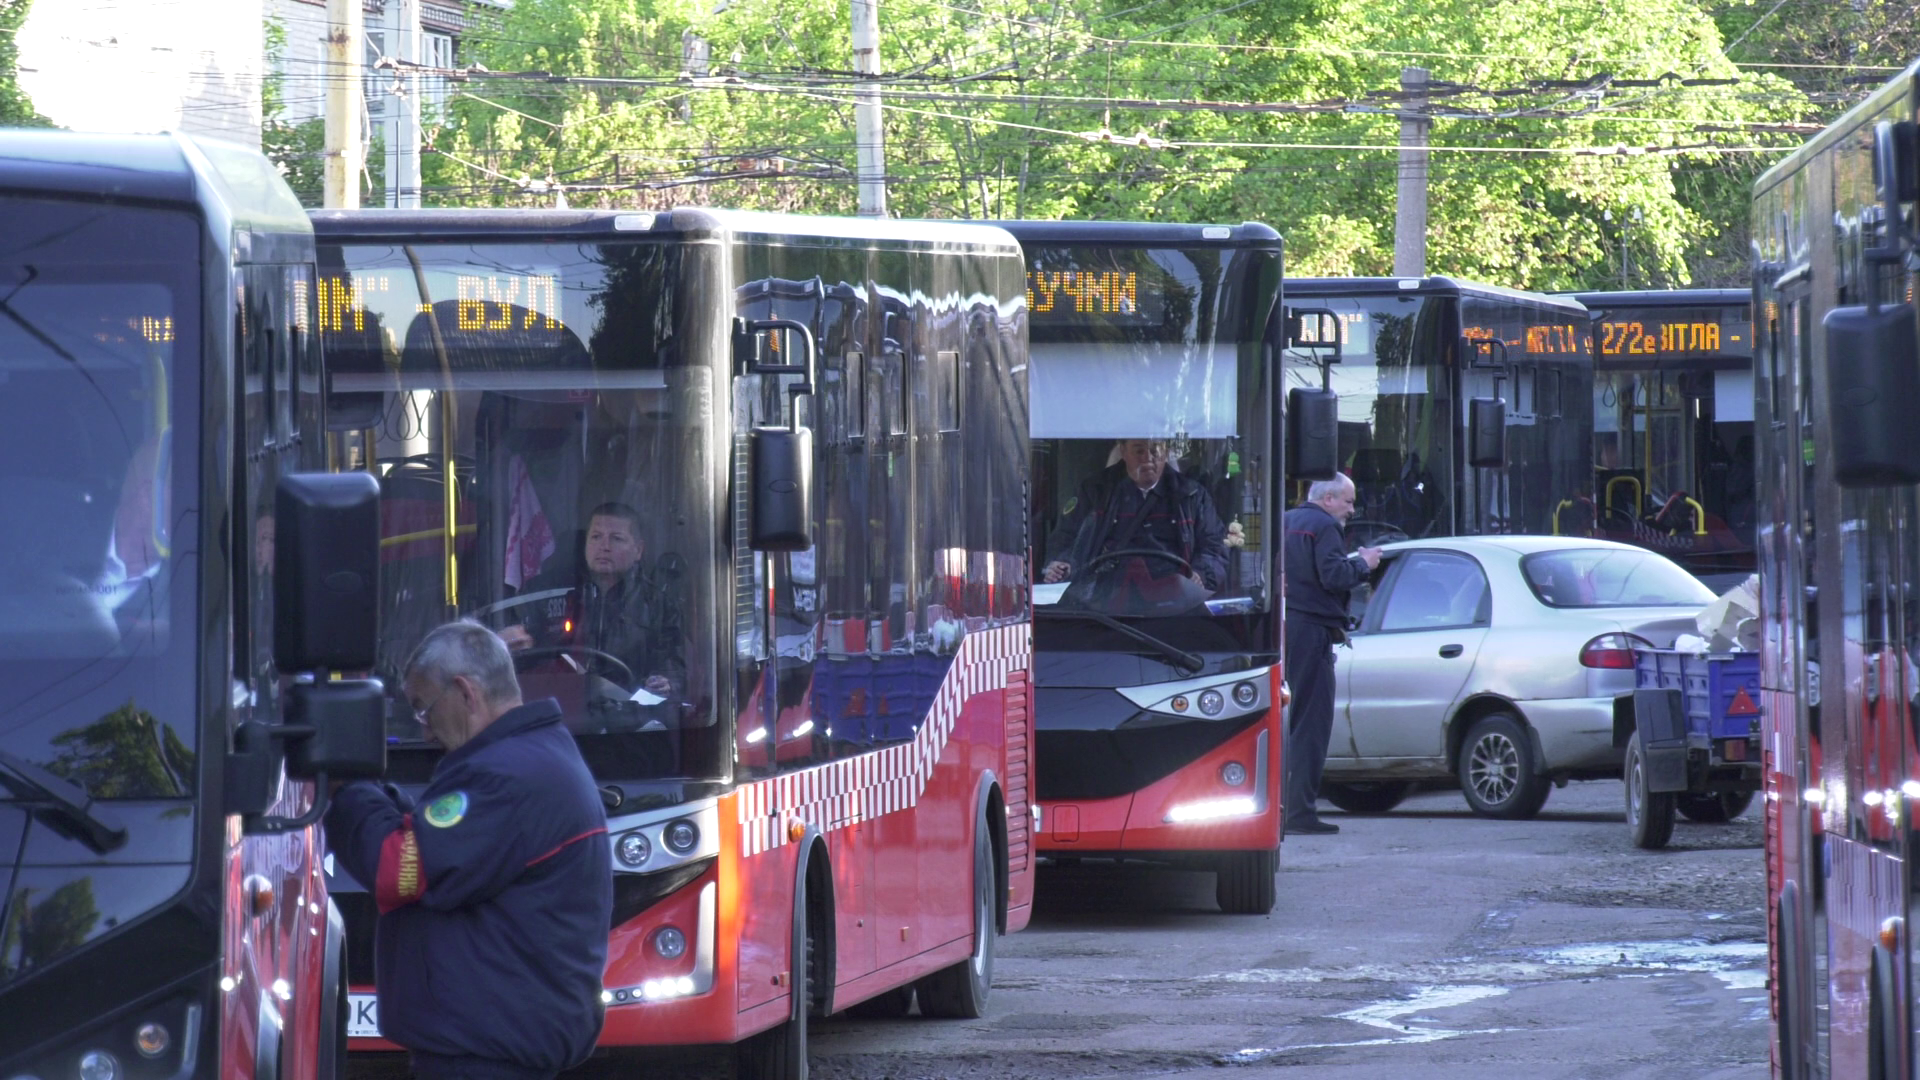 Запуск автобусов в Харькове по районам города: какие маршруты будут курсировать